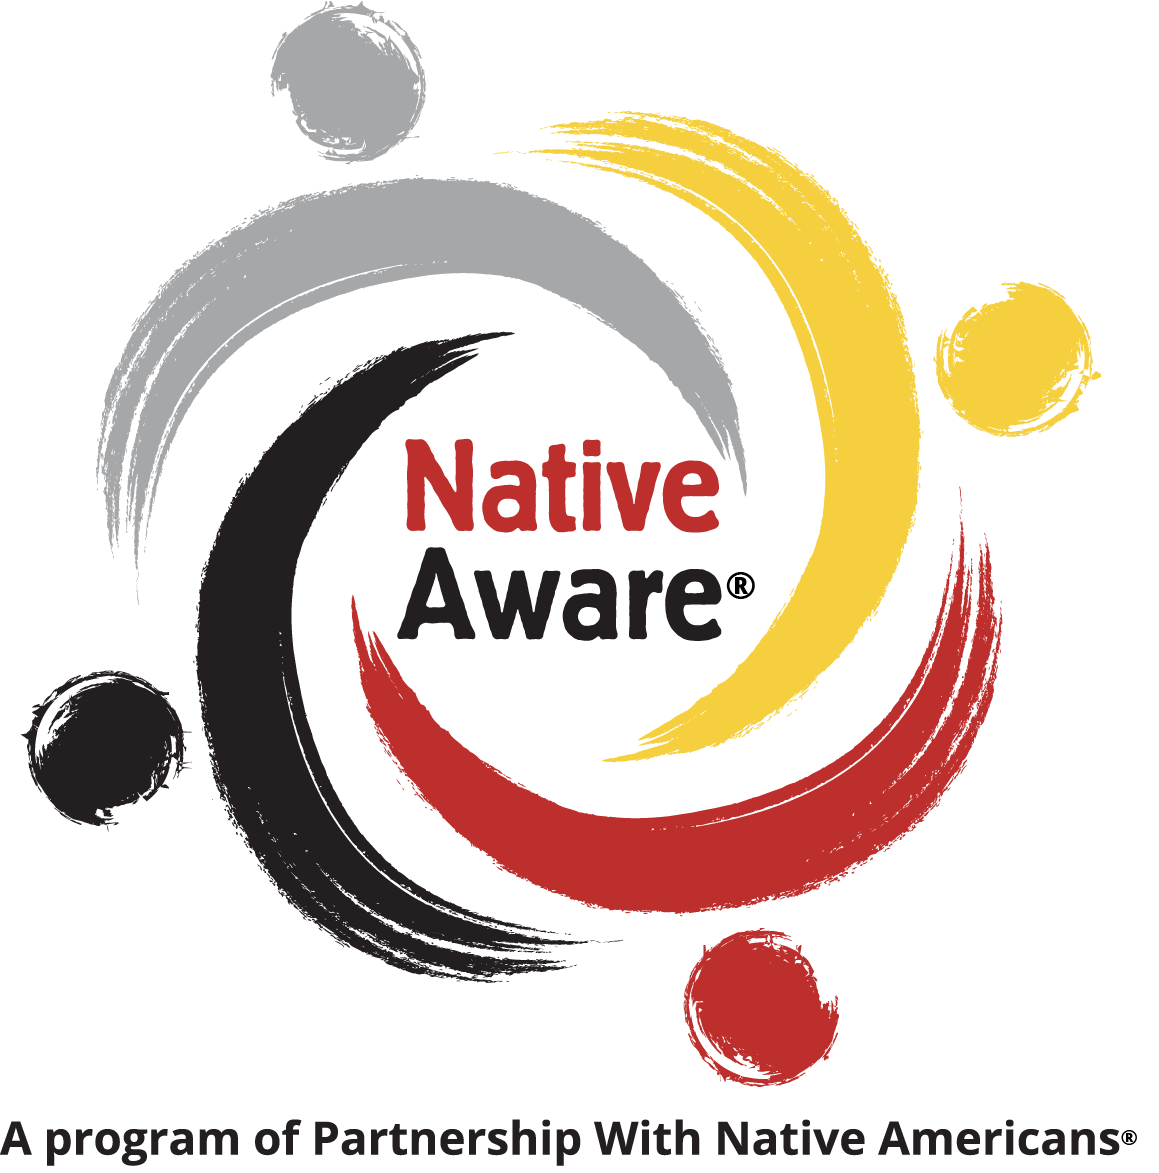 A photo of the Native Aware logo